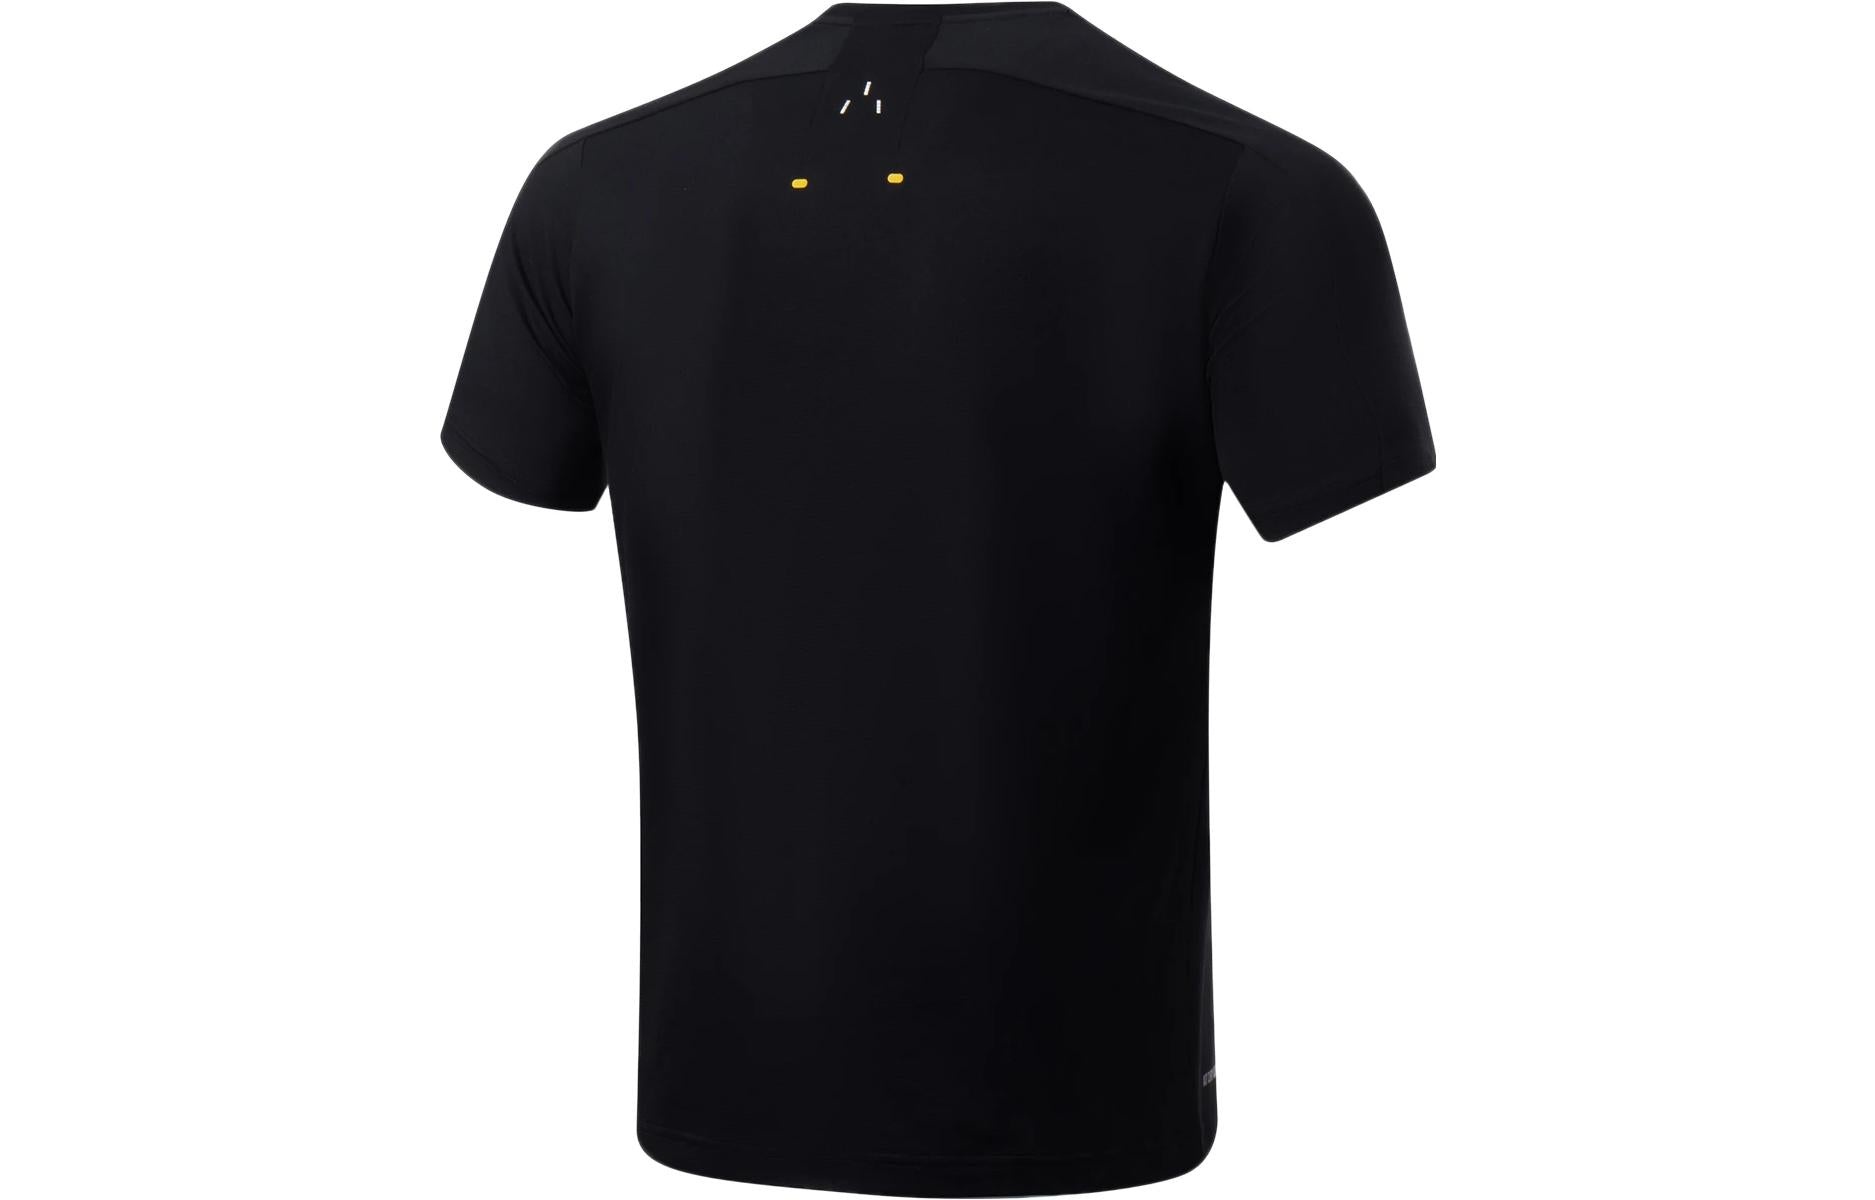 Li-Ning Small Logo Training T-shirt 'Black' ATST035-4 - 2